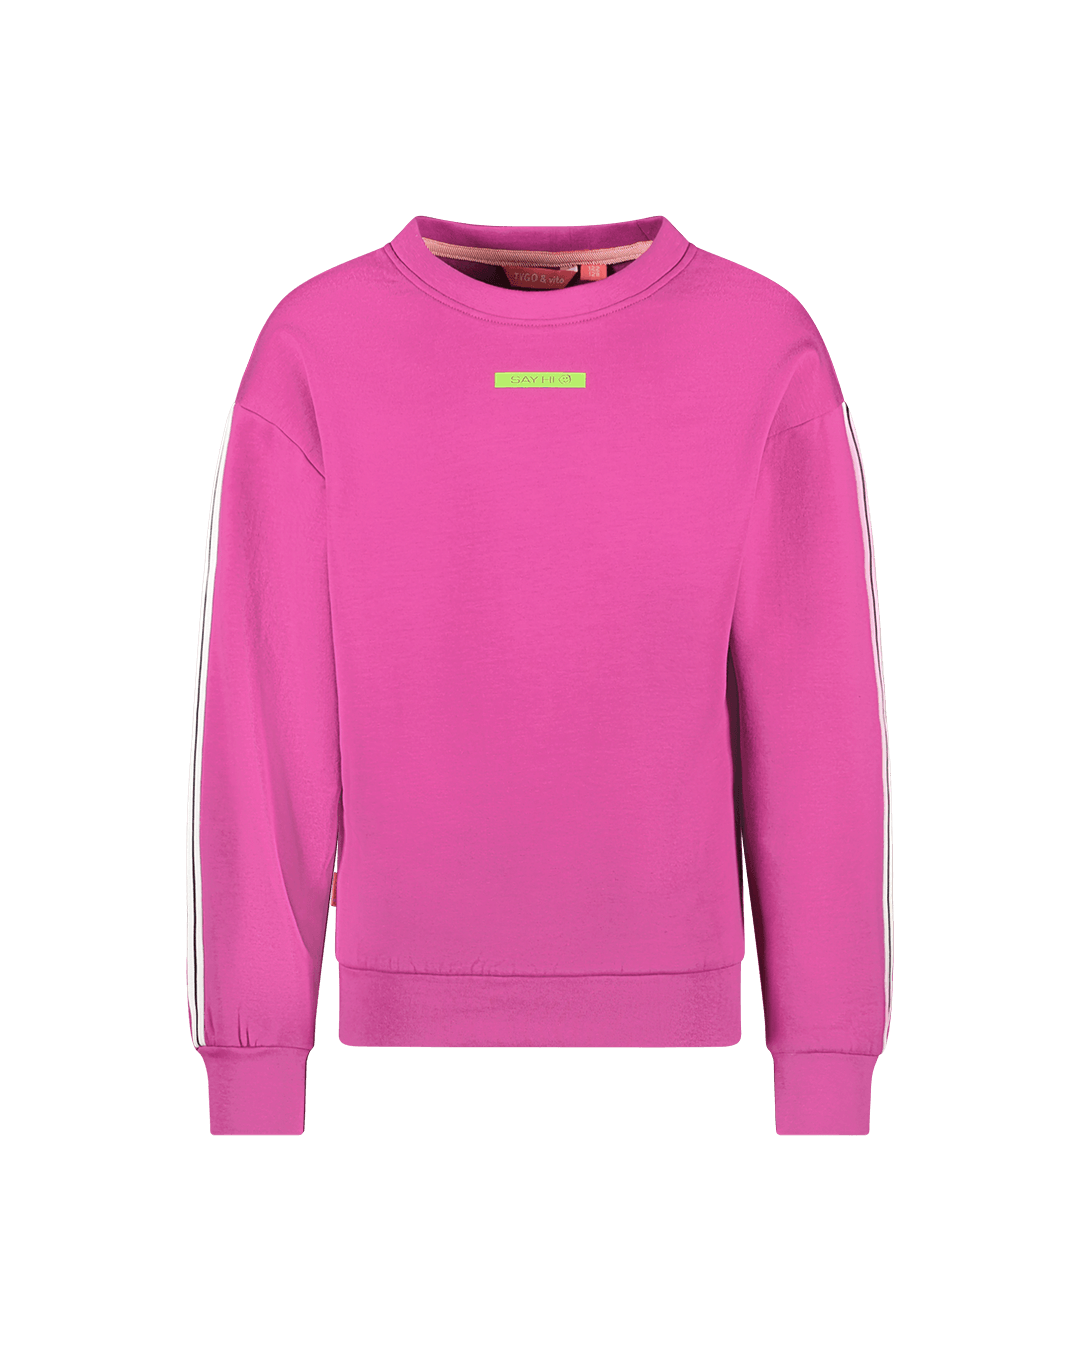 Sweater Sanne beetroot purple - TYGO&vito